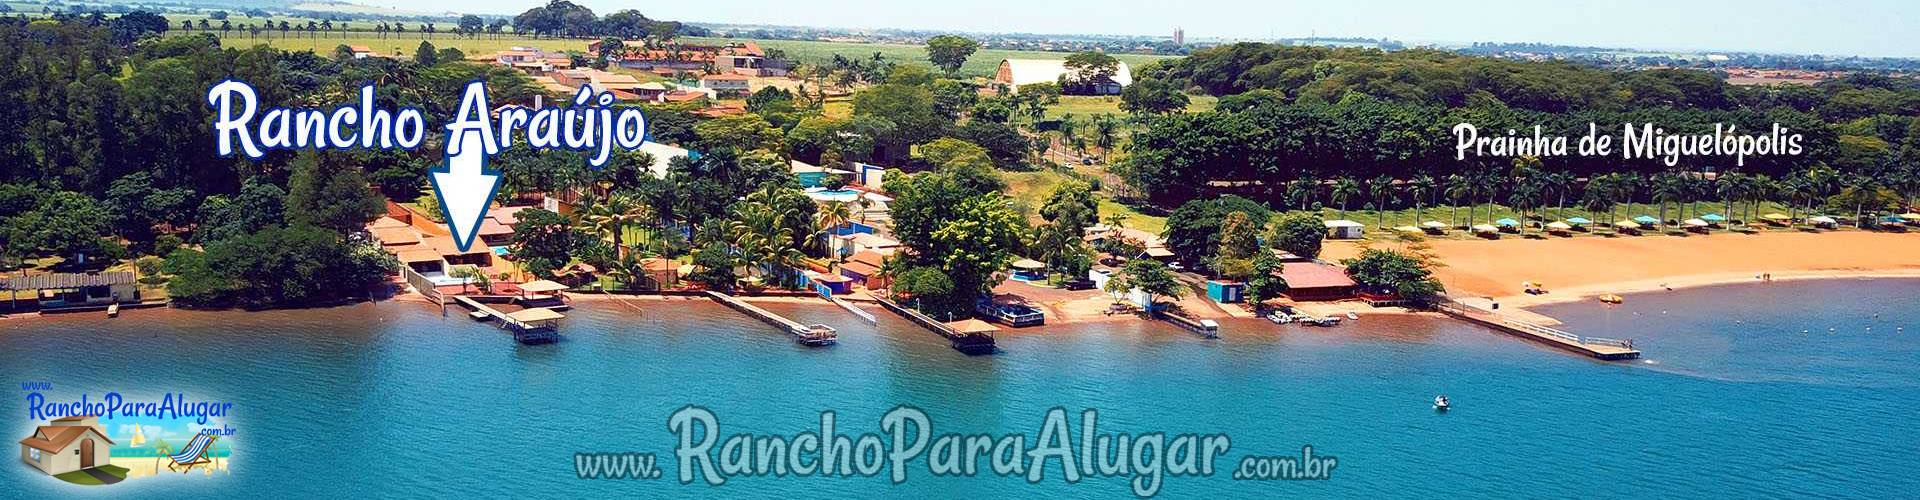 Rancho Araújo para Alugar em Miguelopolis